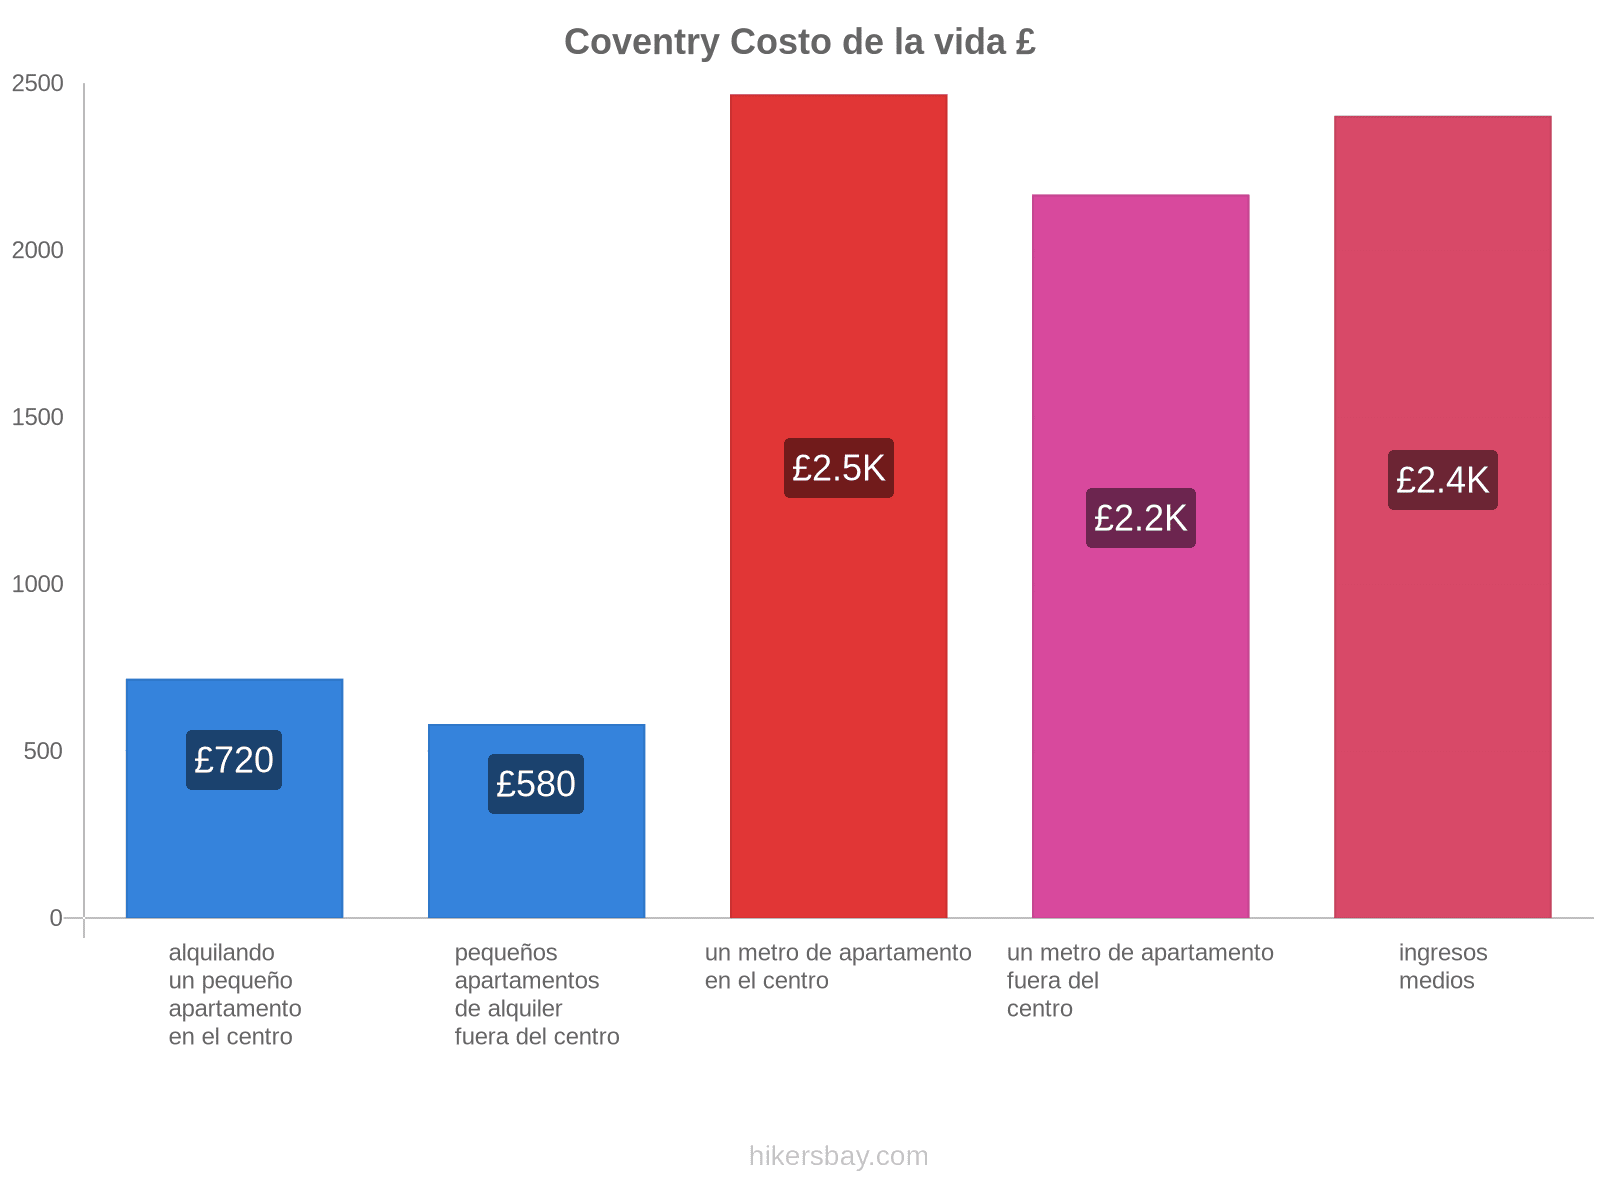 Coventry costo de la vida hikersbay.com